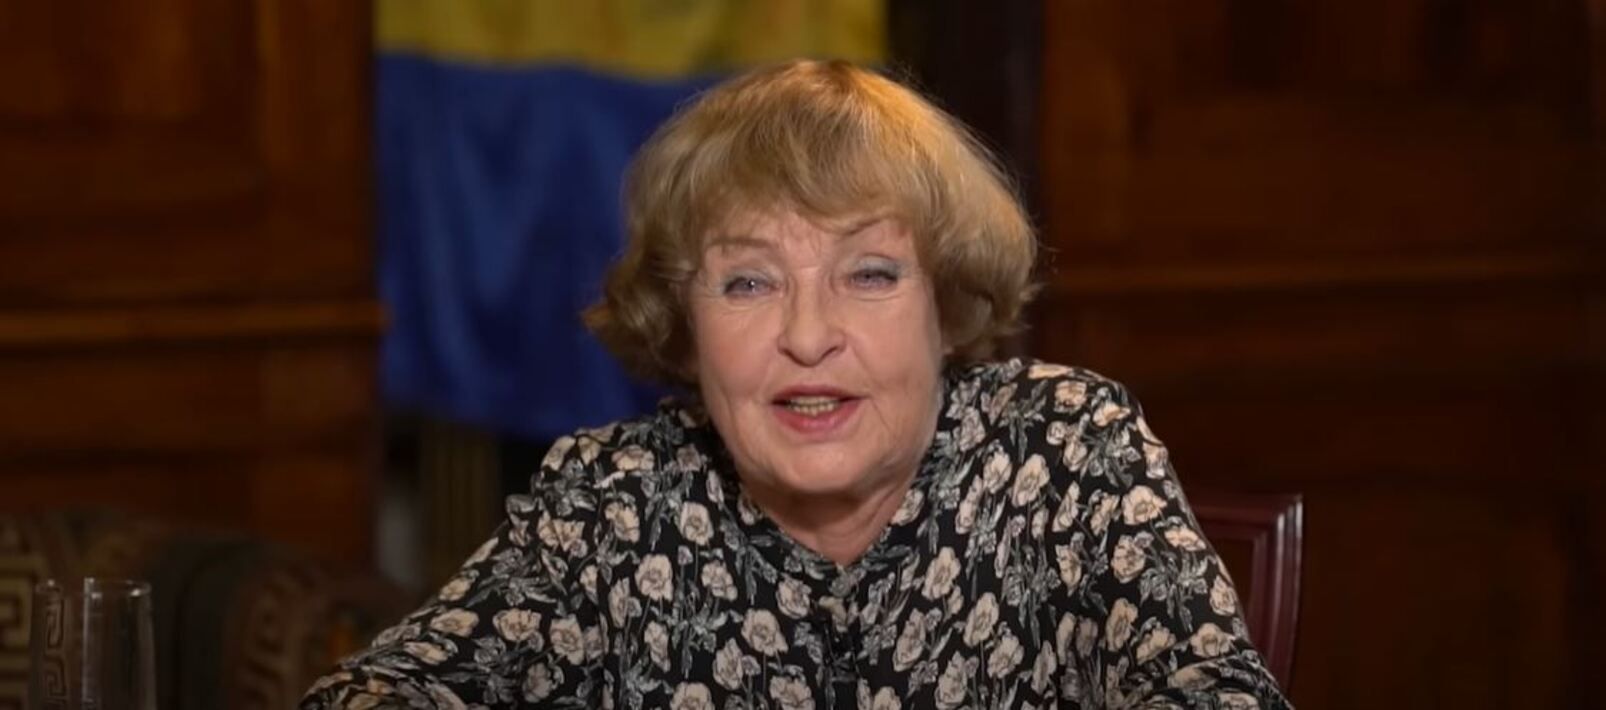 Ада Роговцева 60 років працювала в Росії – як на це реагують українці 